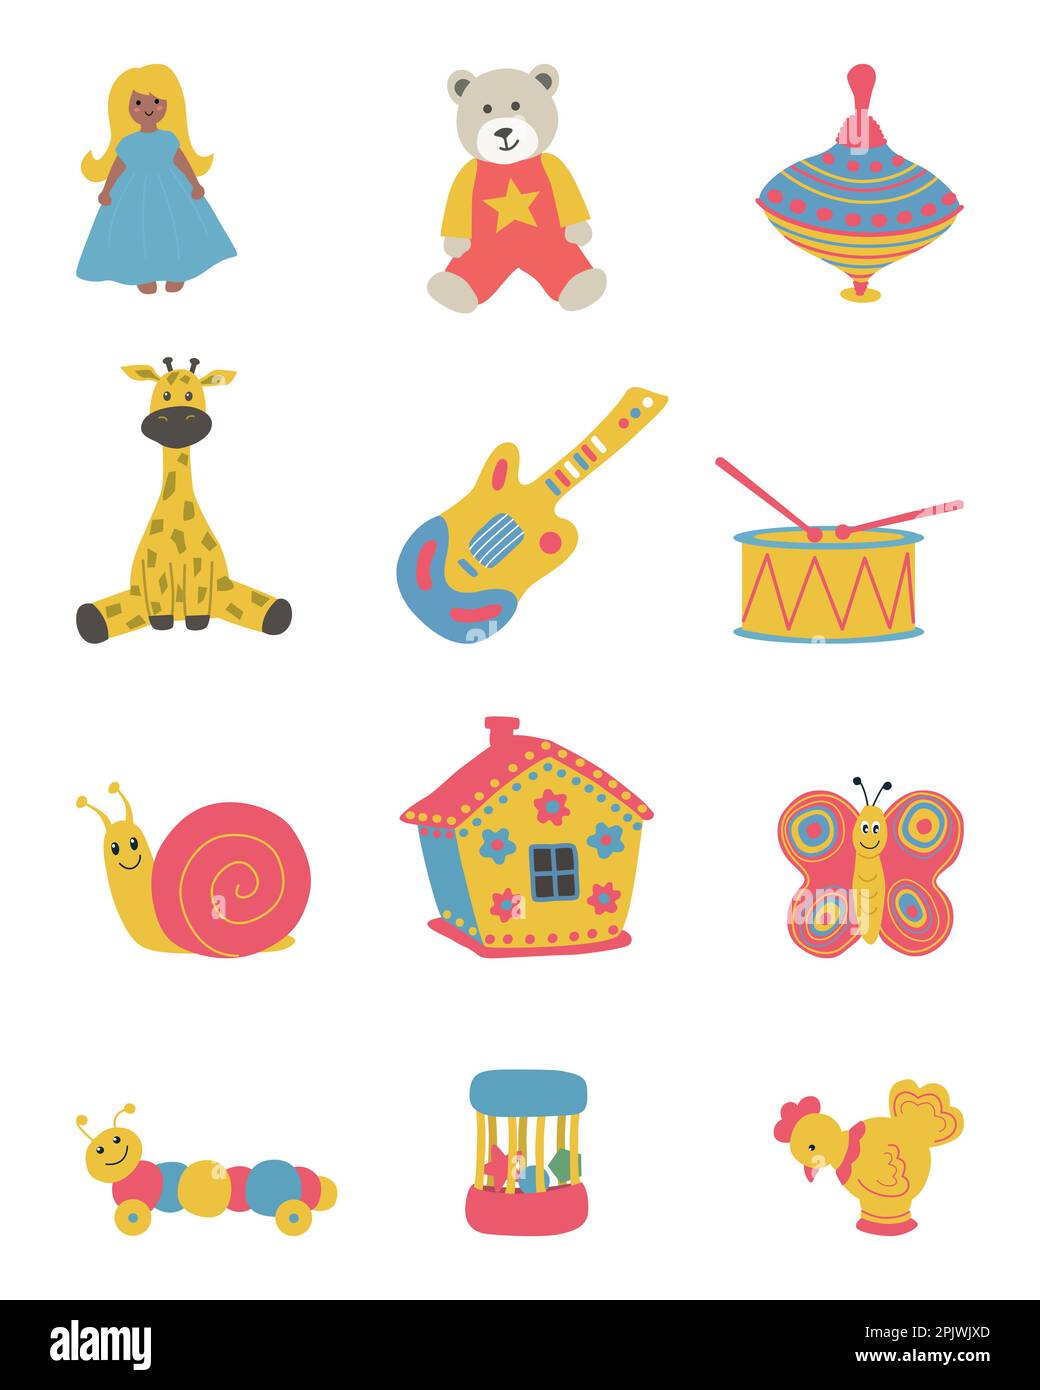 Giocattoli isolati su sfondo bianco. C'è una bambola, un orsacchiotto, una casa, un mandrino, una giraf, una chitarra, una batteria e altre cose nella foto. Illustrazione Vettoriale